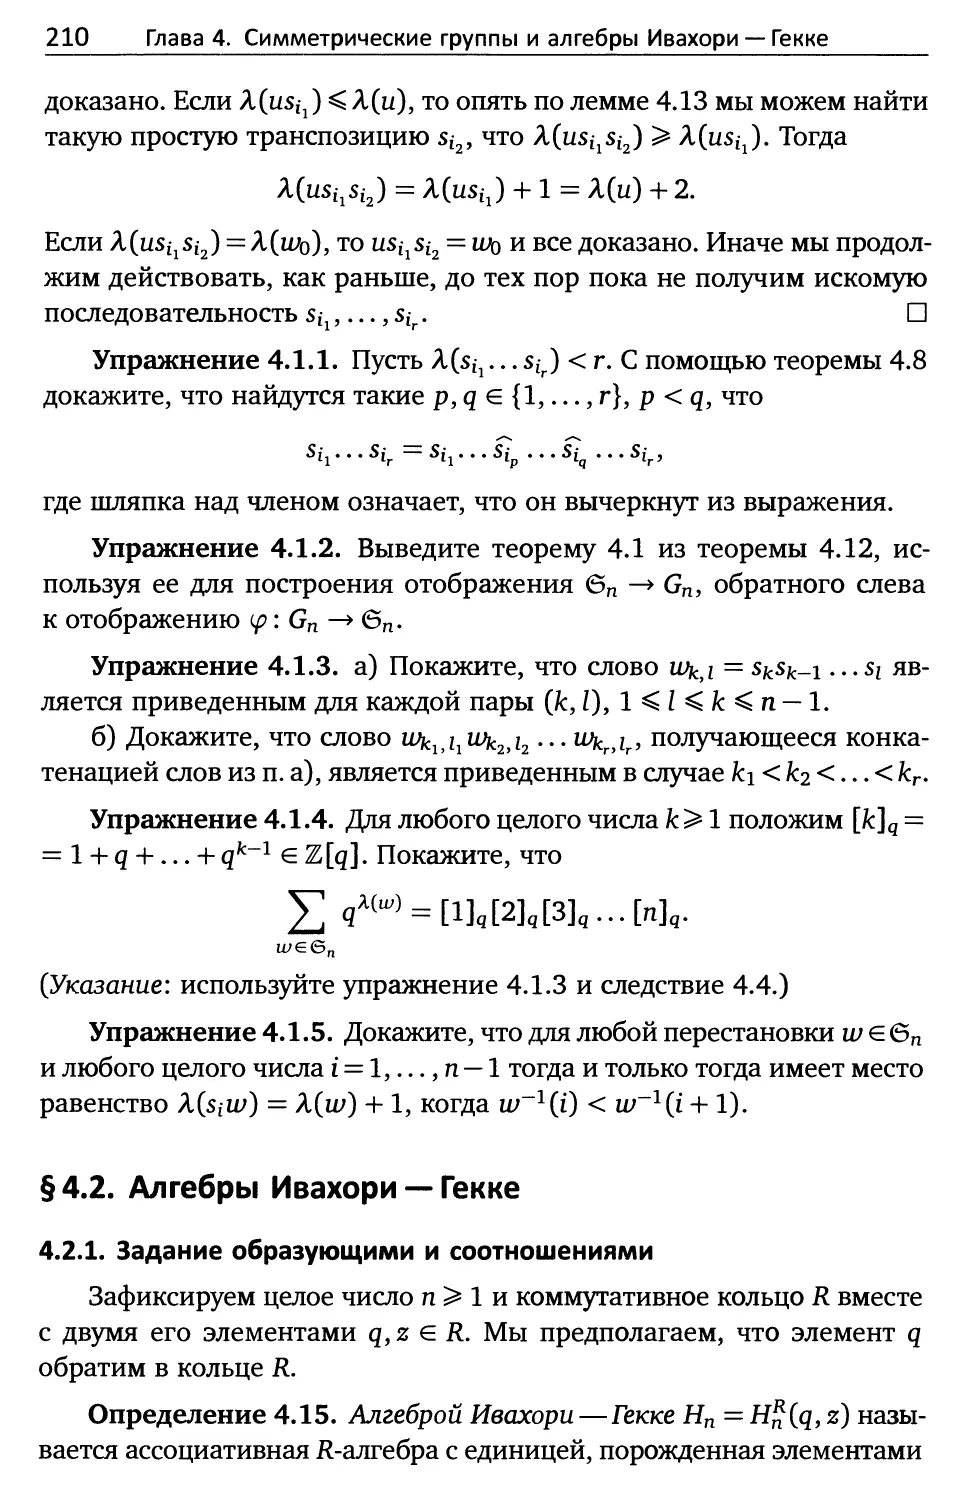 § 4.2. Алгебры Ивахори — Гекке